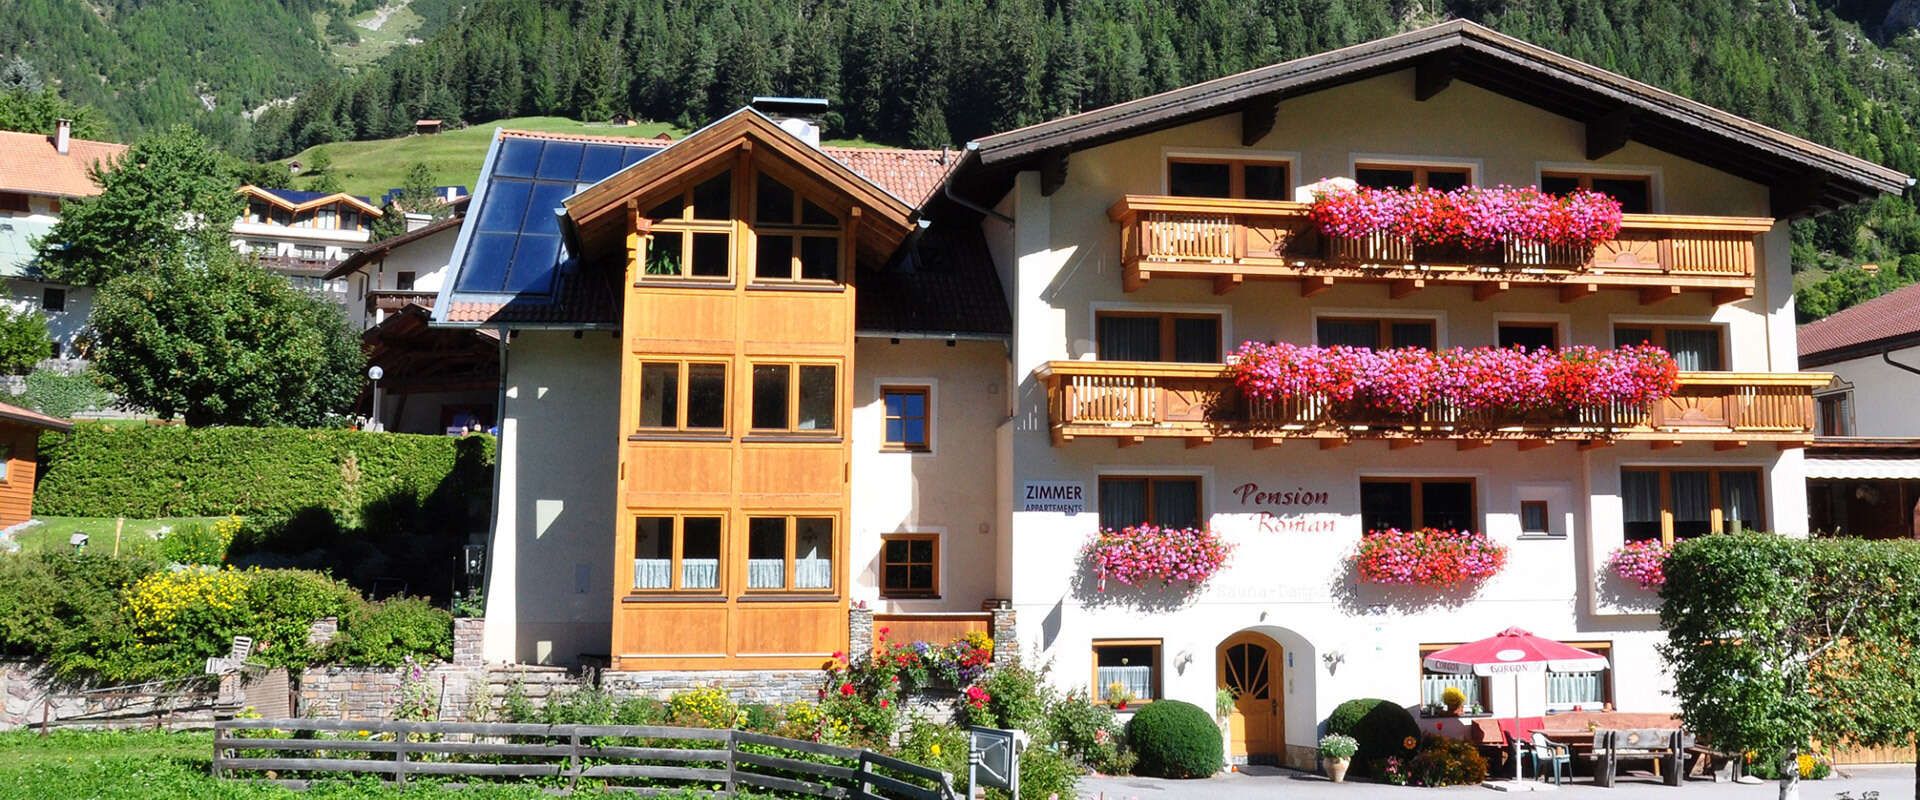 Pension Roman in Pettneu am Arlberg Tirol